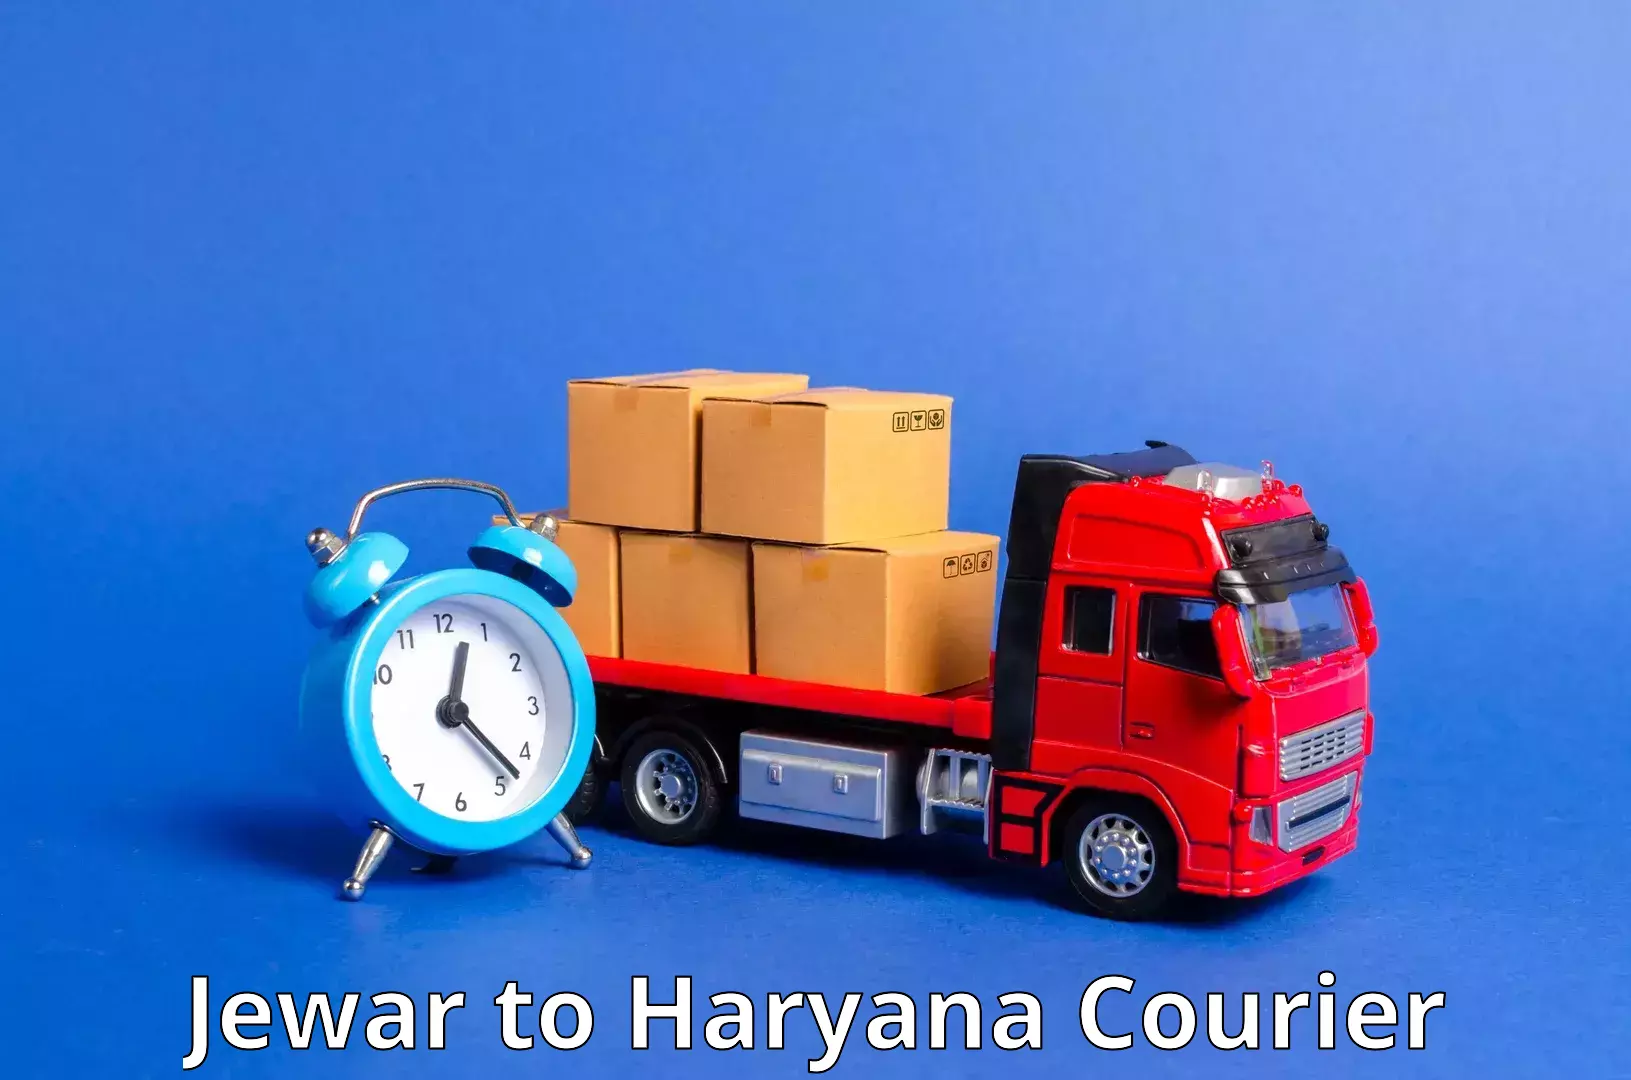 Nationwide parcel services Jewar to Rewari